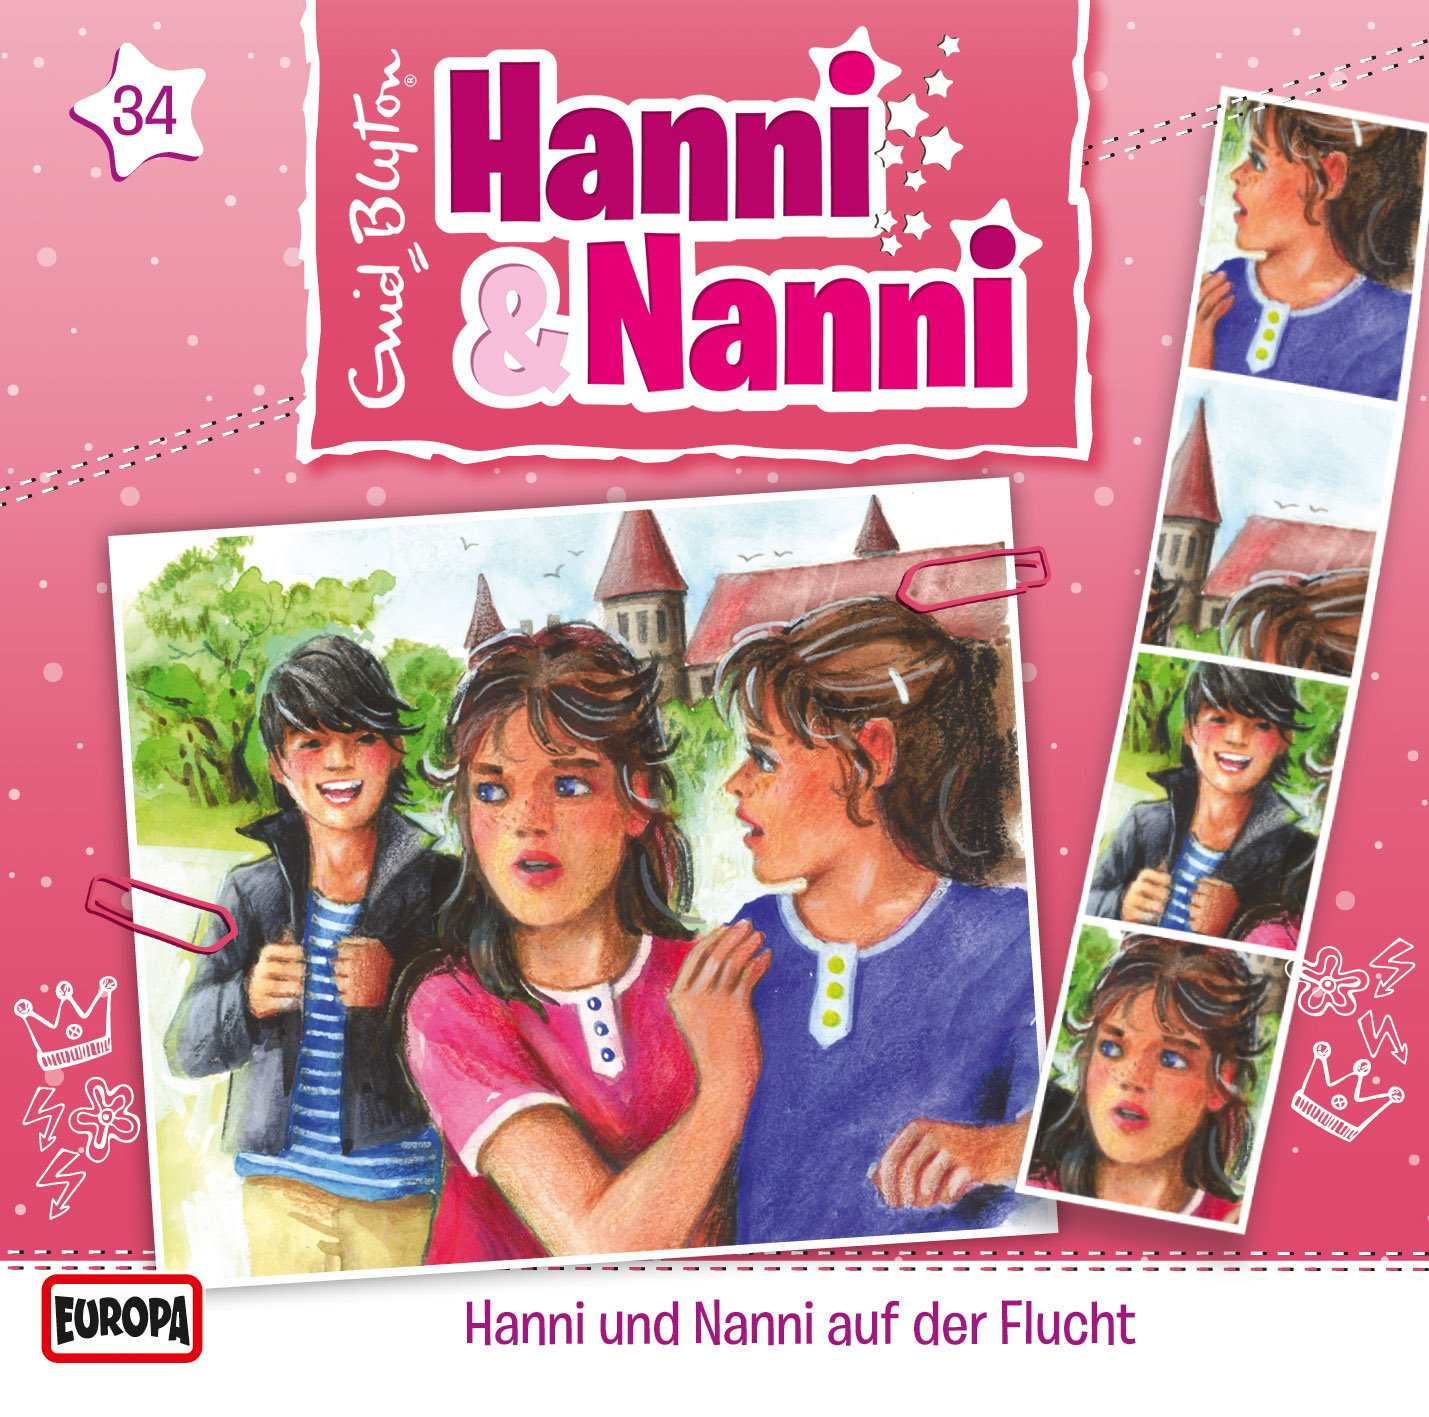 Hanni und Nanni - Hanni & Nanni auf der Flucht